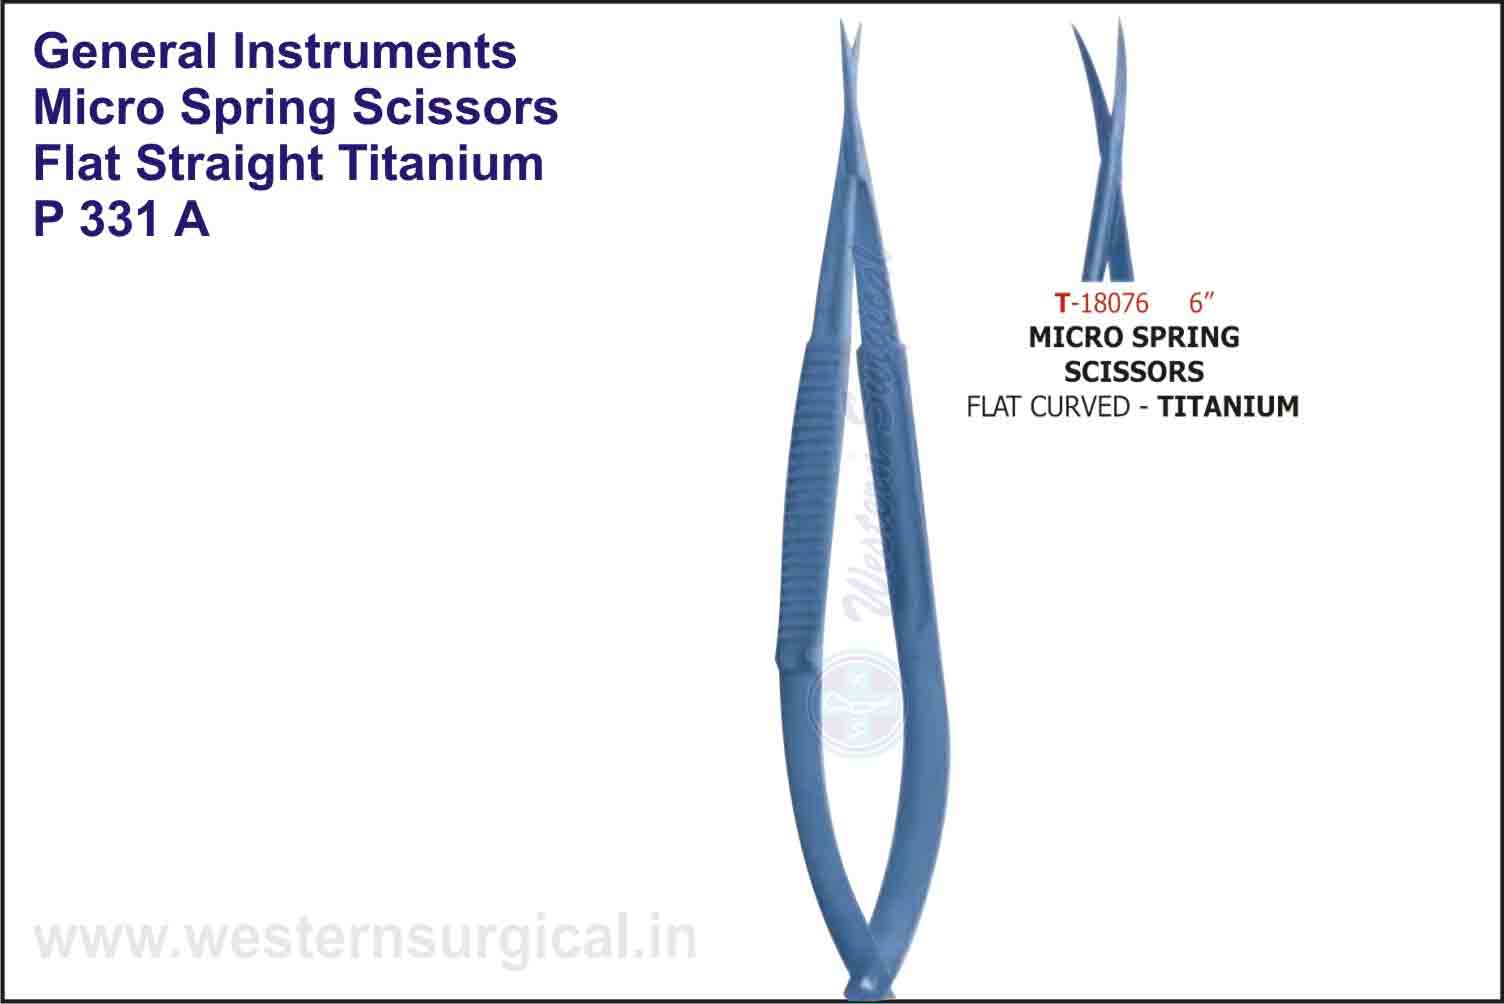 MICRO SPRING SCISSORS FLAT STRAIGHT & CURVED - TITANIUM